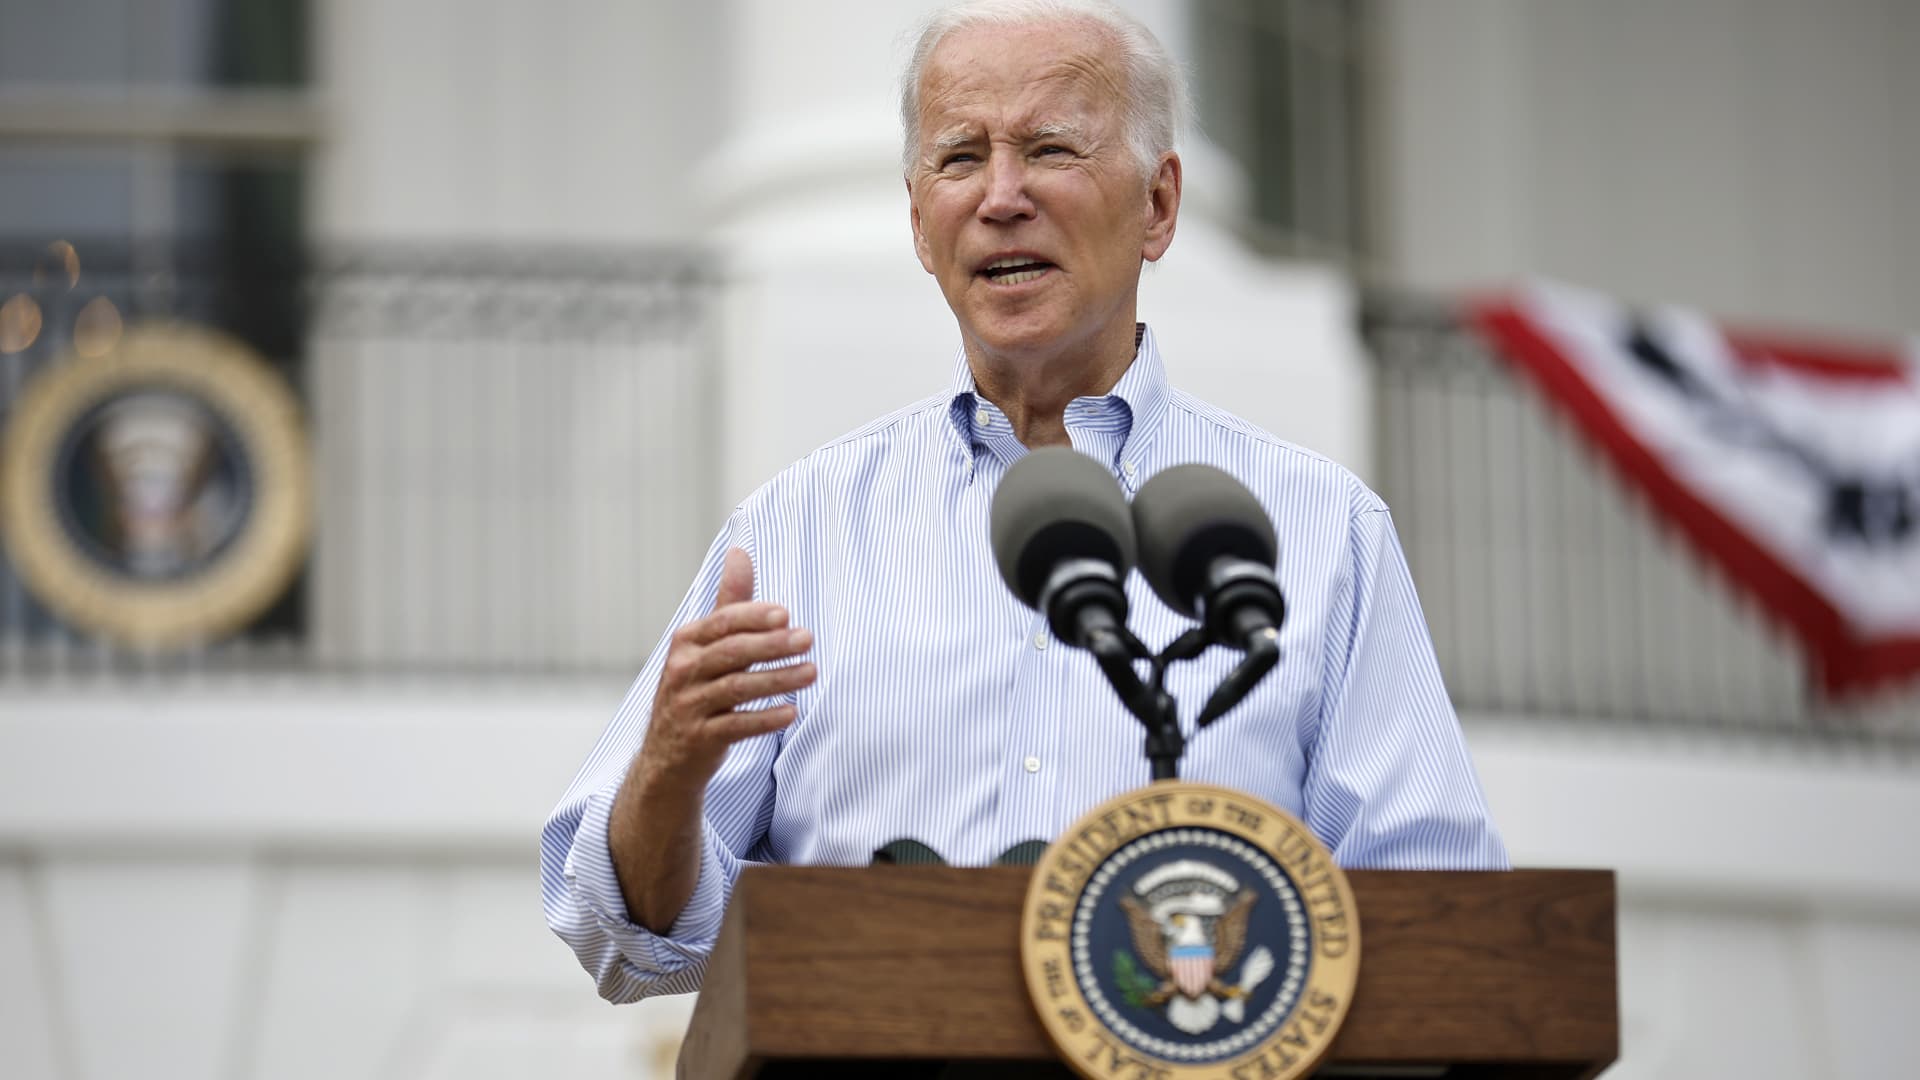 Biden cancels $10,000 in federal pupil mortgage debt for many debtors